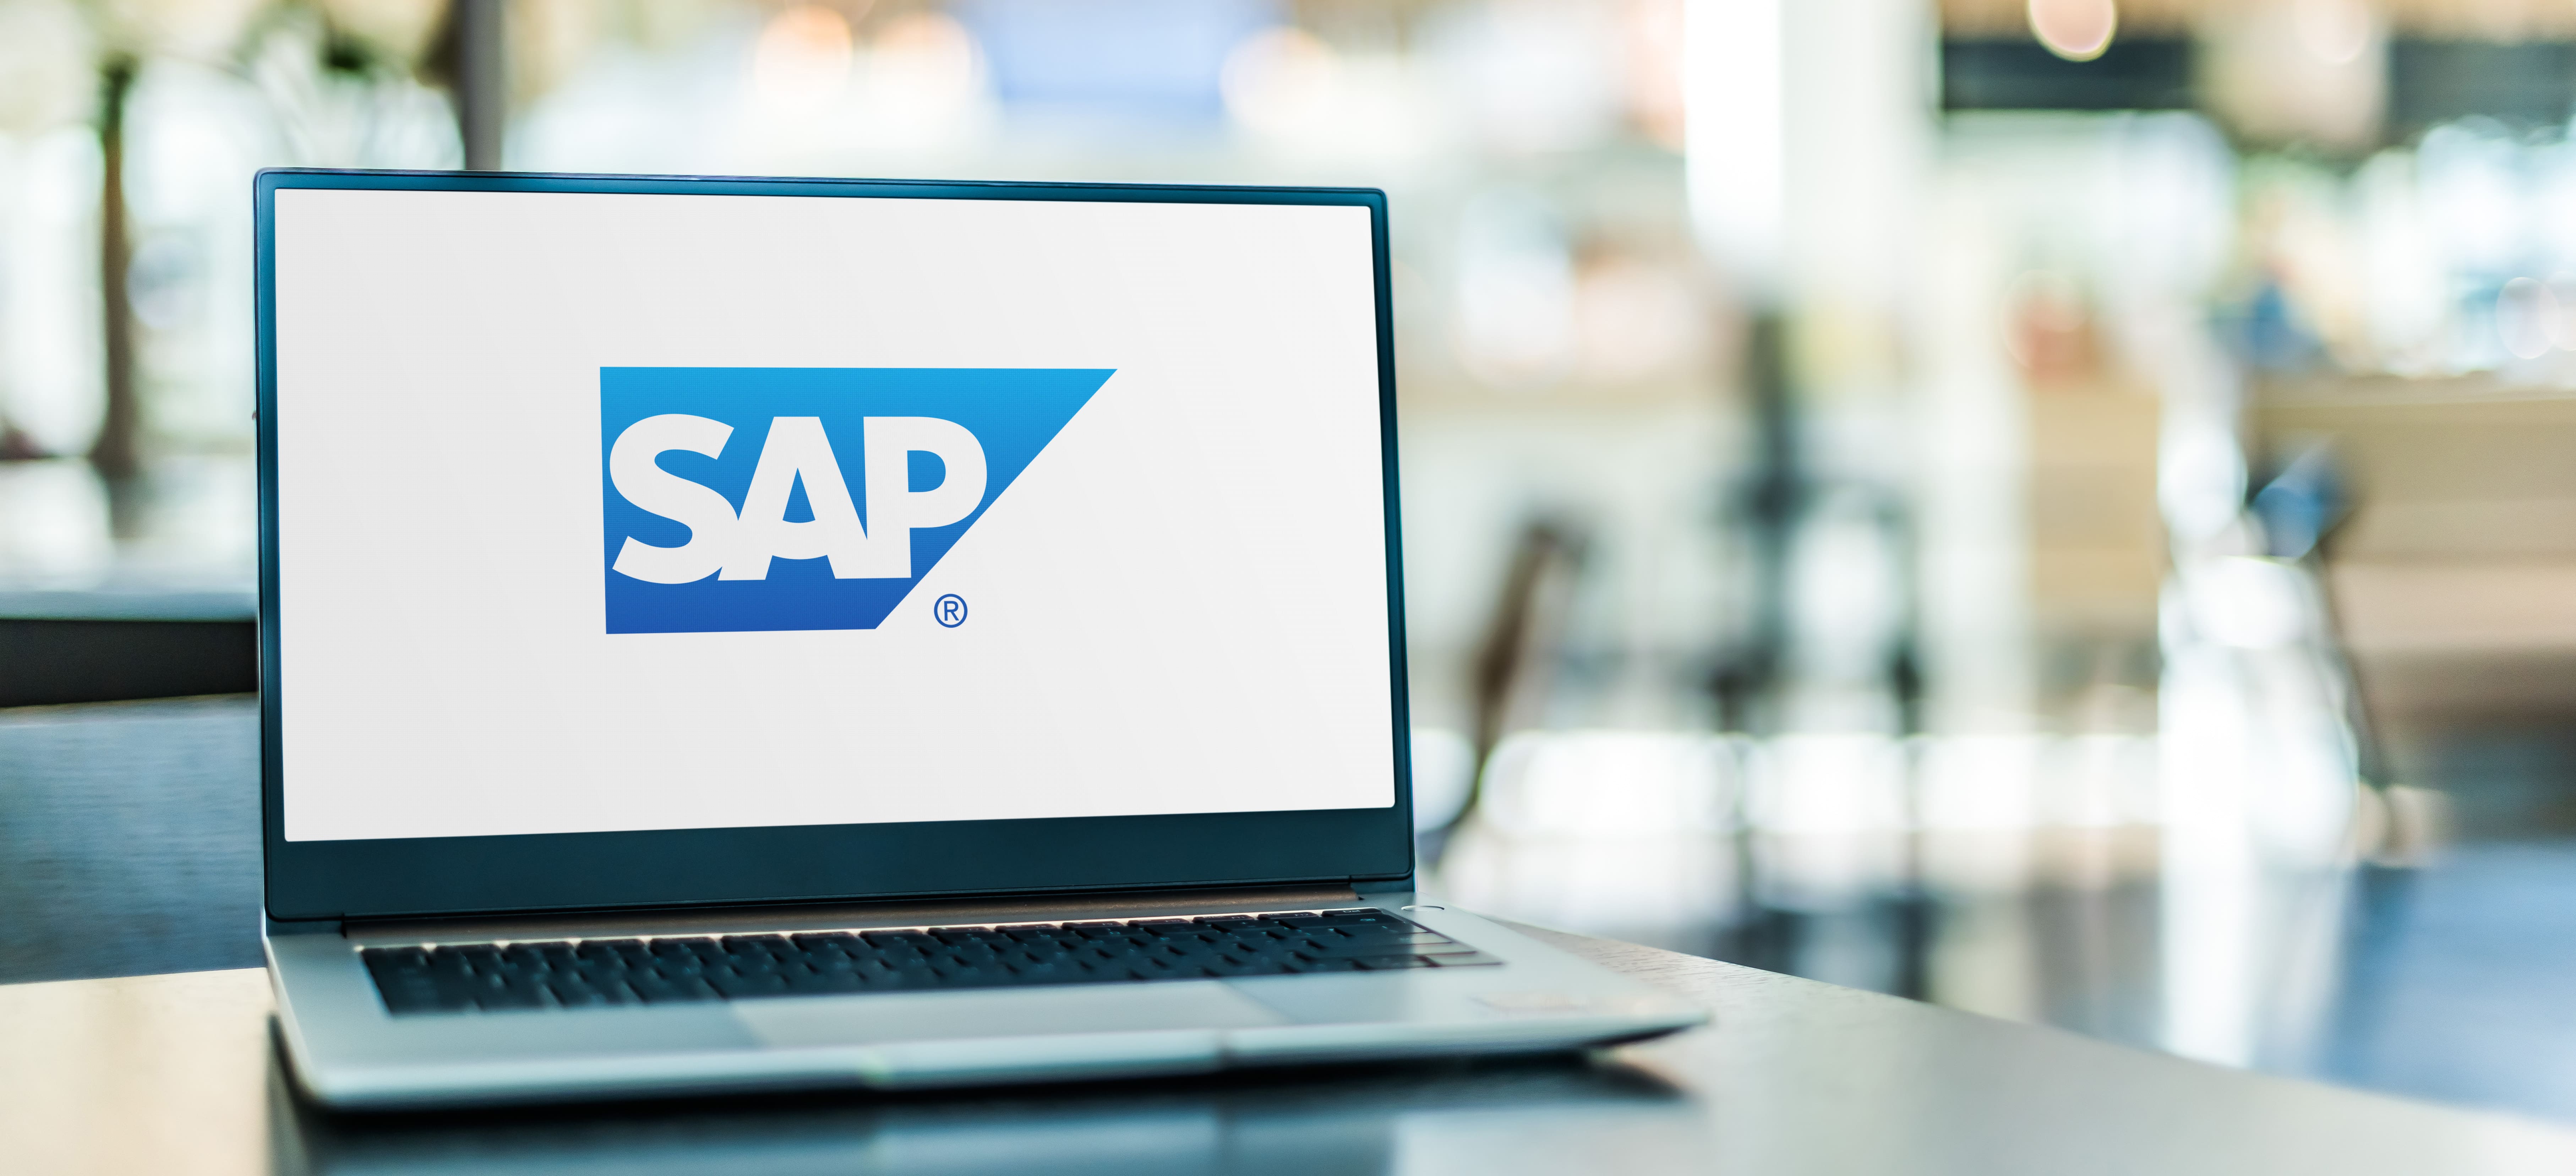 SAP on laptop-min